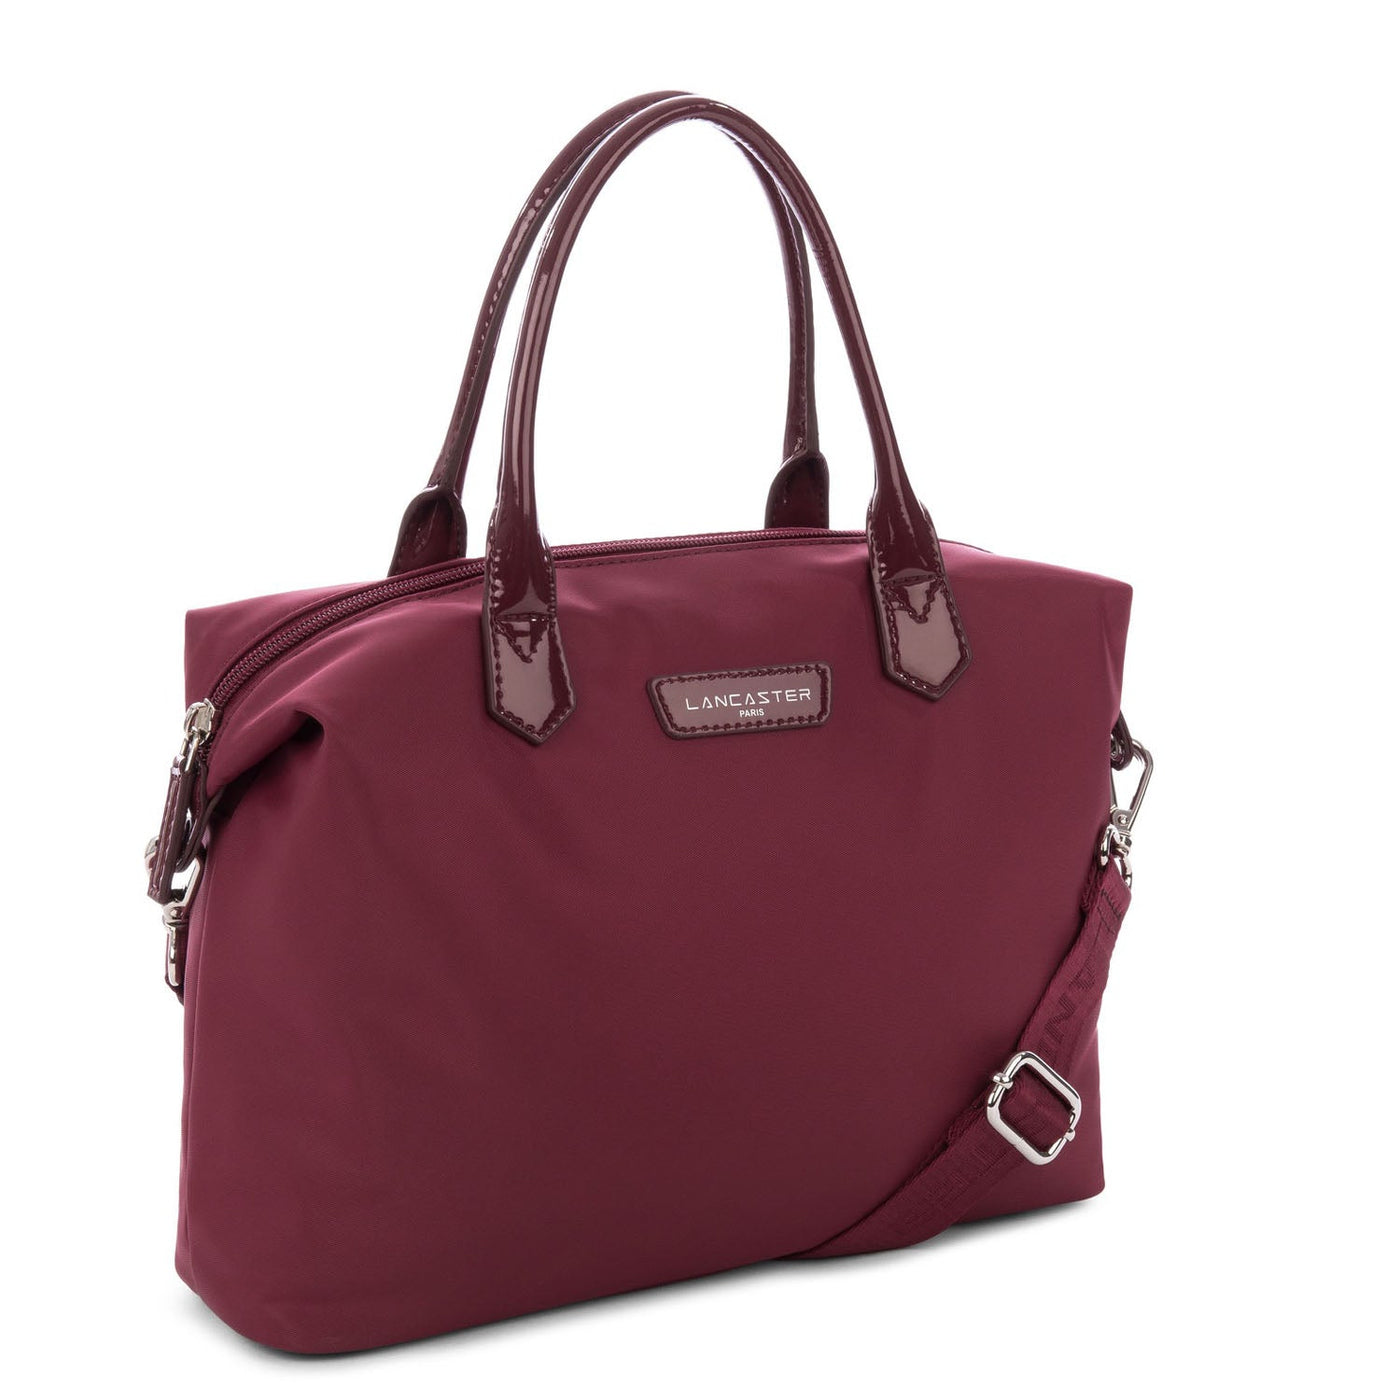 m handbag - basic verni #couleur_bordeaux